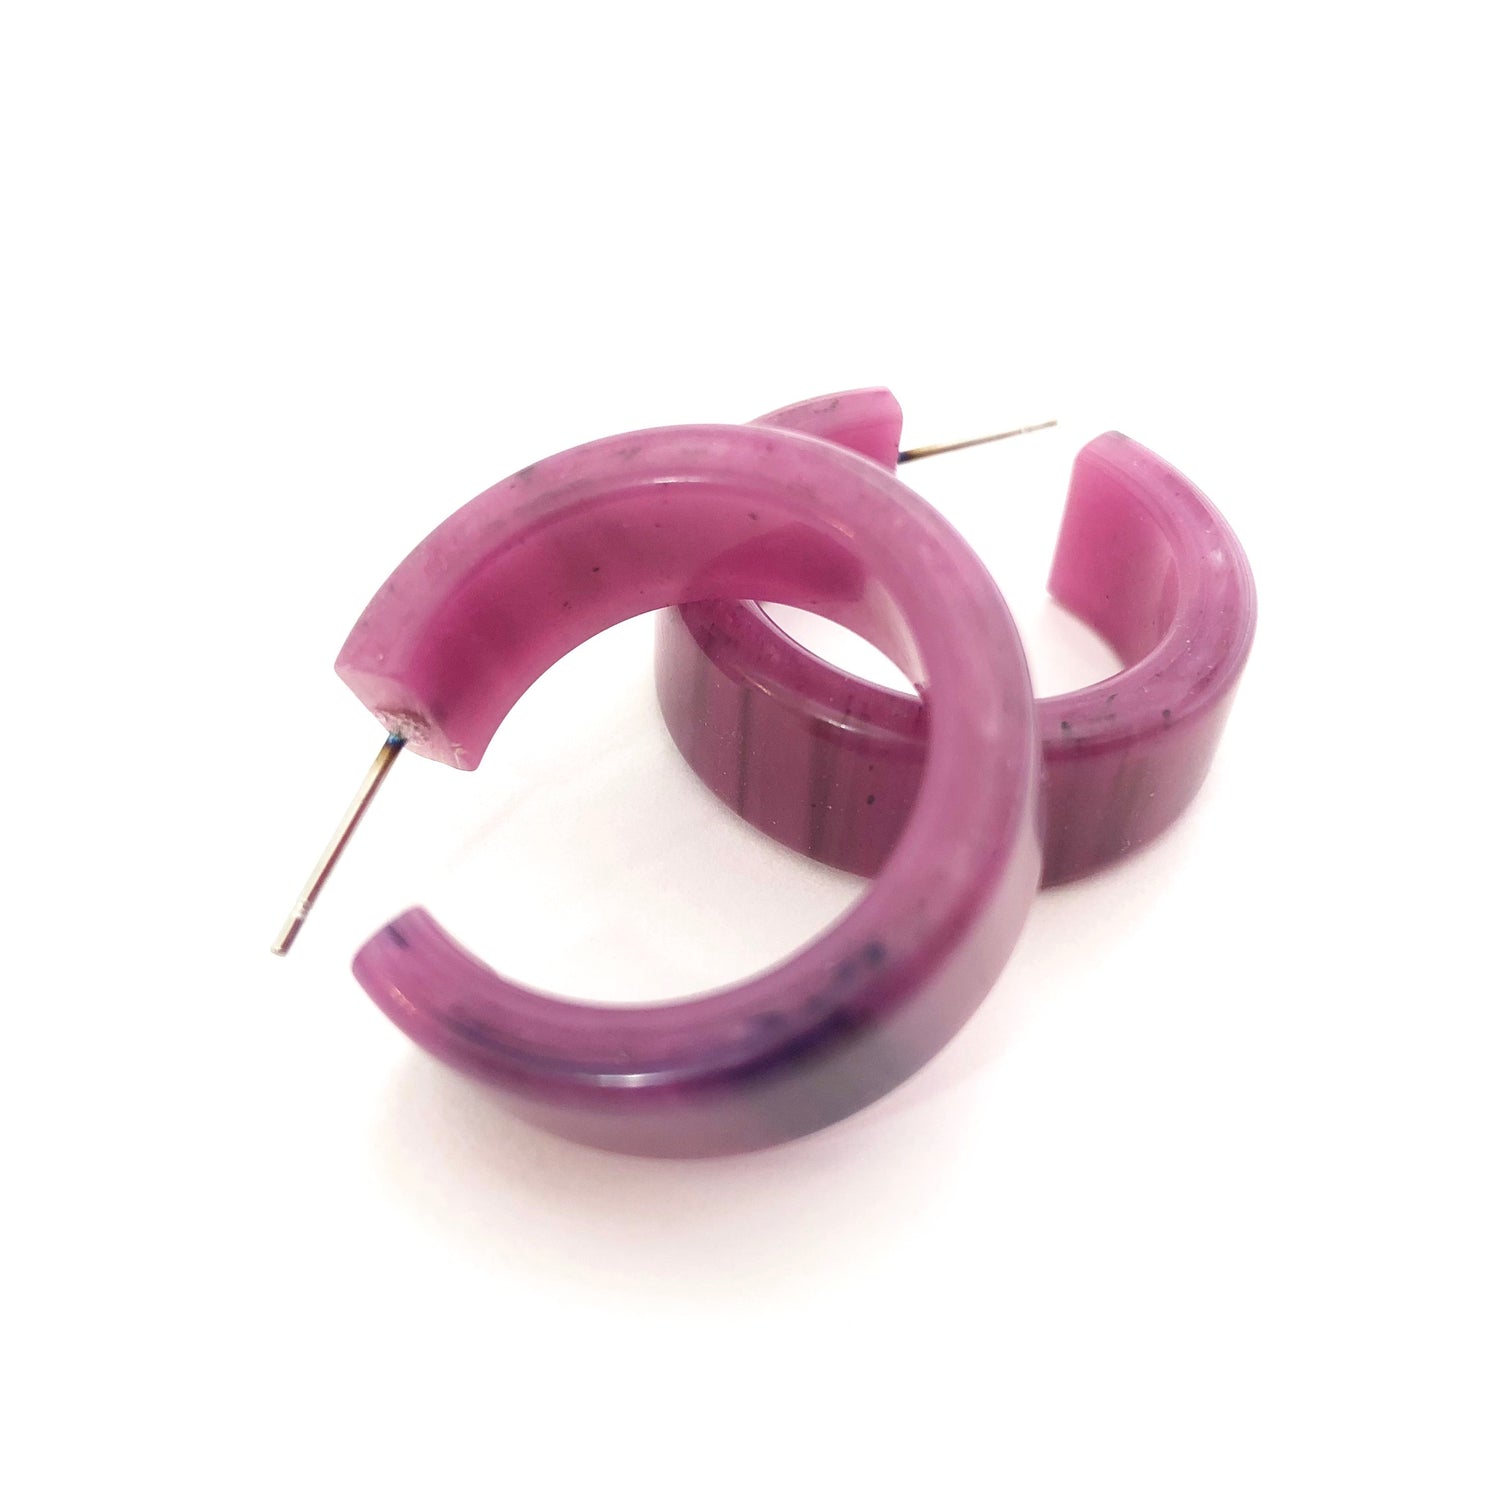 violet hoop earrings